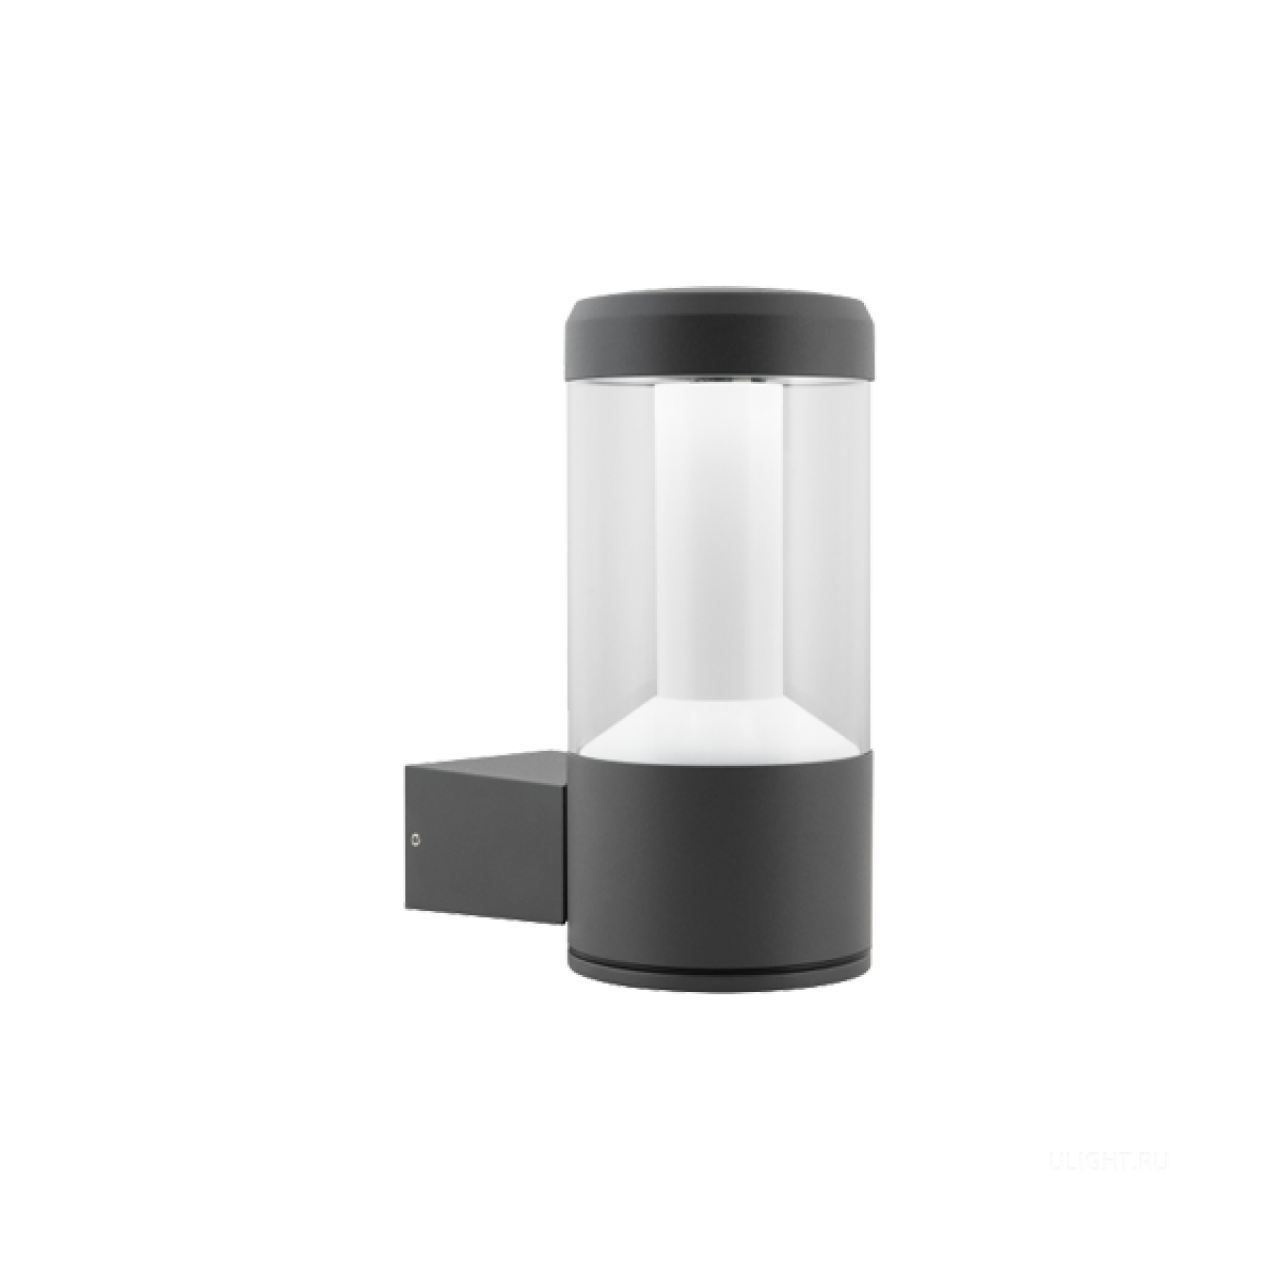 Настенный светильник с прозрачной оптической частью, излучающей свет на 360° вокруг светильника. Светильник предназначен для подсветки входных зон зданий и в качестве архитектурнохудожественной подсветки. Корпус светильника выполнен из 
 высококачественного алюминия, покрытого полиэфирной порошковой краской, устойчивой к воздействию агрессивных сред и УФ-излучению, имеет высокую степень защиты от проникновения пыли и влаги. Оптический блок помещен в прозрачную трубу из ударопрочного поликарбоната, обеспечивающую высокую степень защиты от внешних воздействий. Конструкция оптической части светильника обеспечивает заливающую засветку поверхности фасада, прилегающей к нему территории и отсутствие ослепляющего эффекта. 